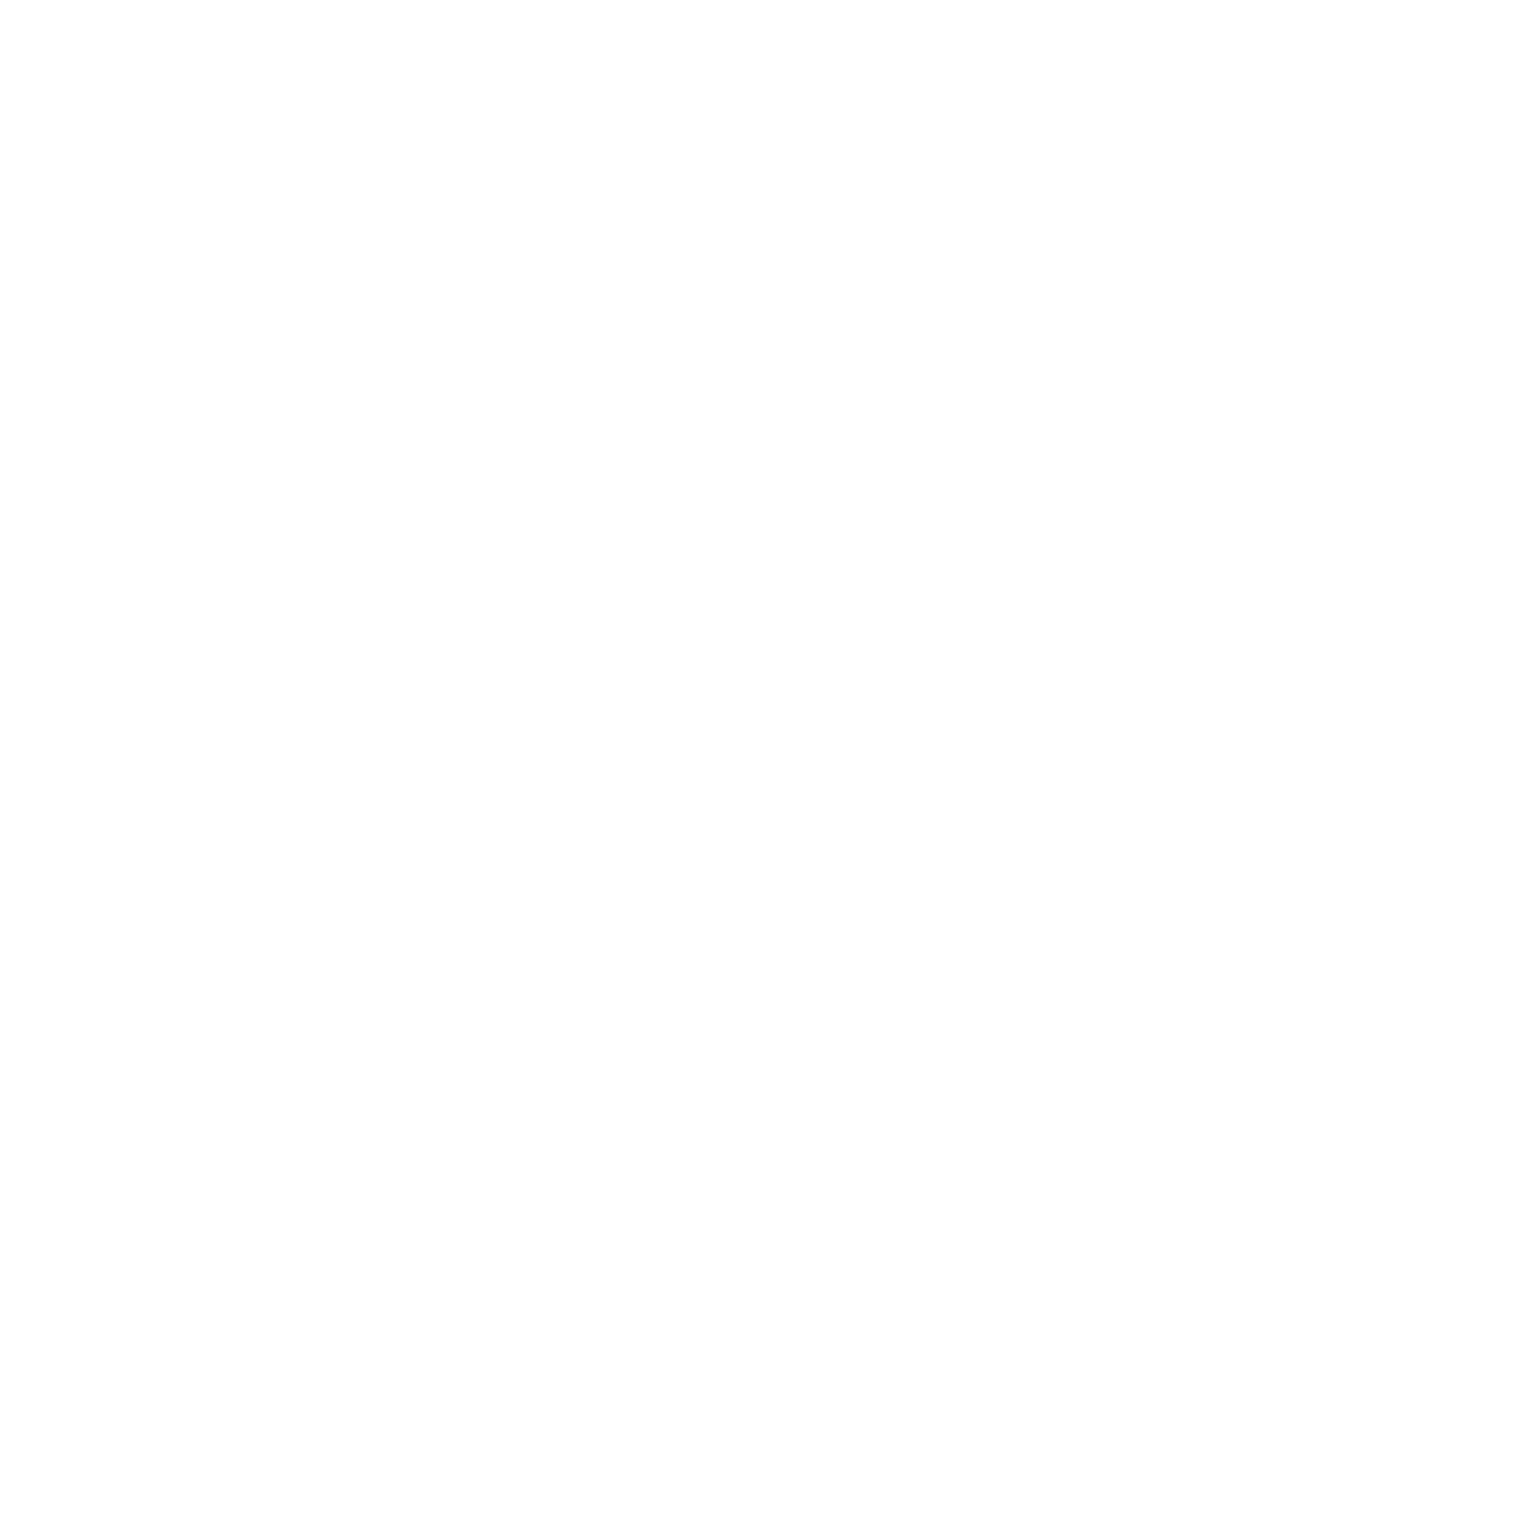 Yext logo grand pour les fonds sombres (PNG transparent)